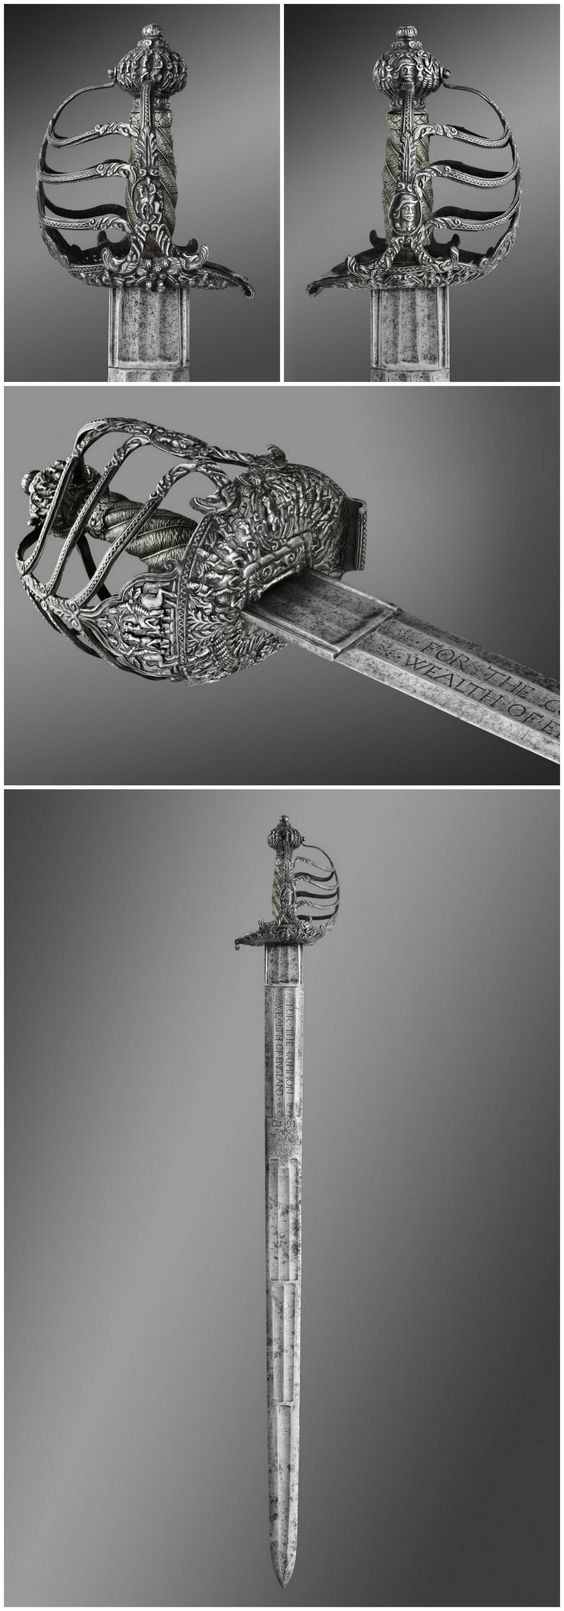 Покойницкий меч (палаш), Англия, 17 век